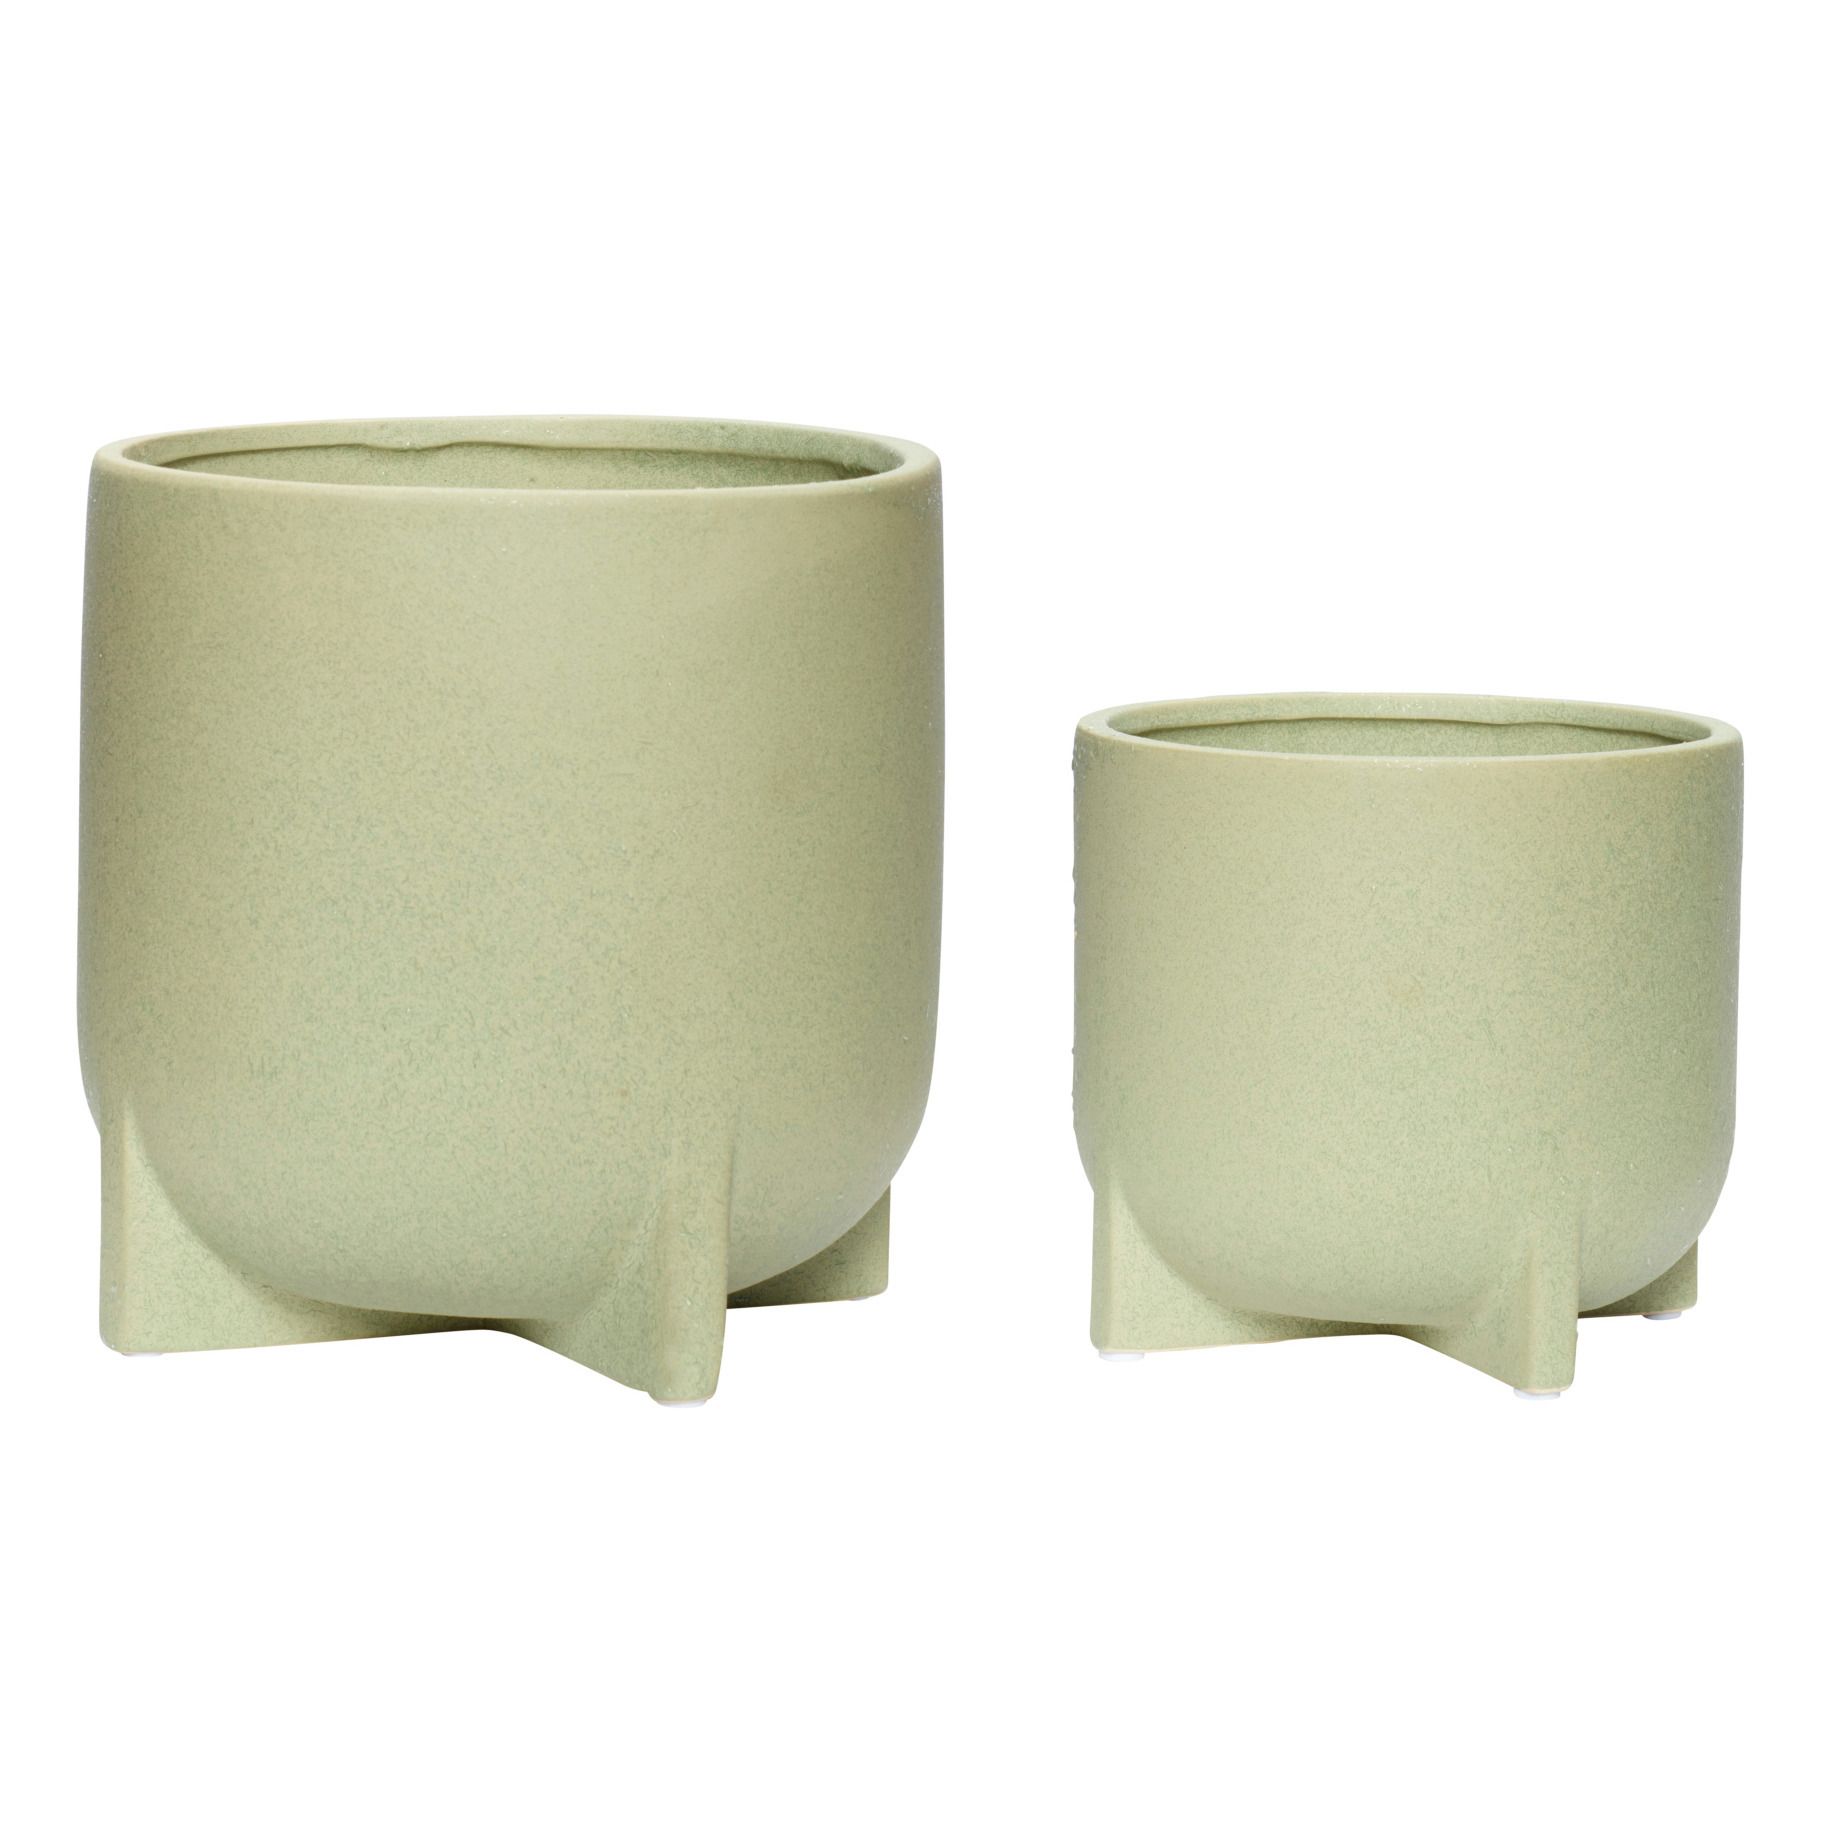 Hubsch - Pot en céramique - Set de 2 - Vert amande